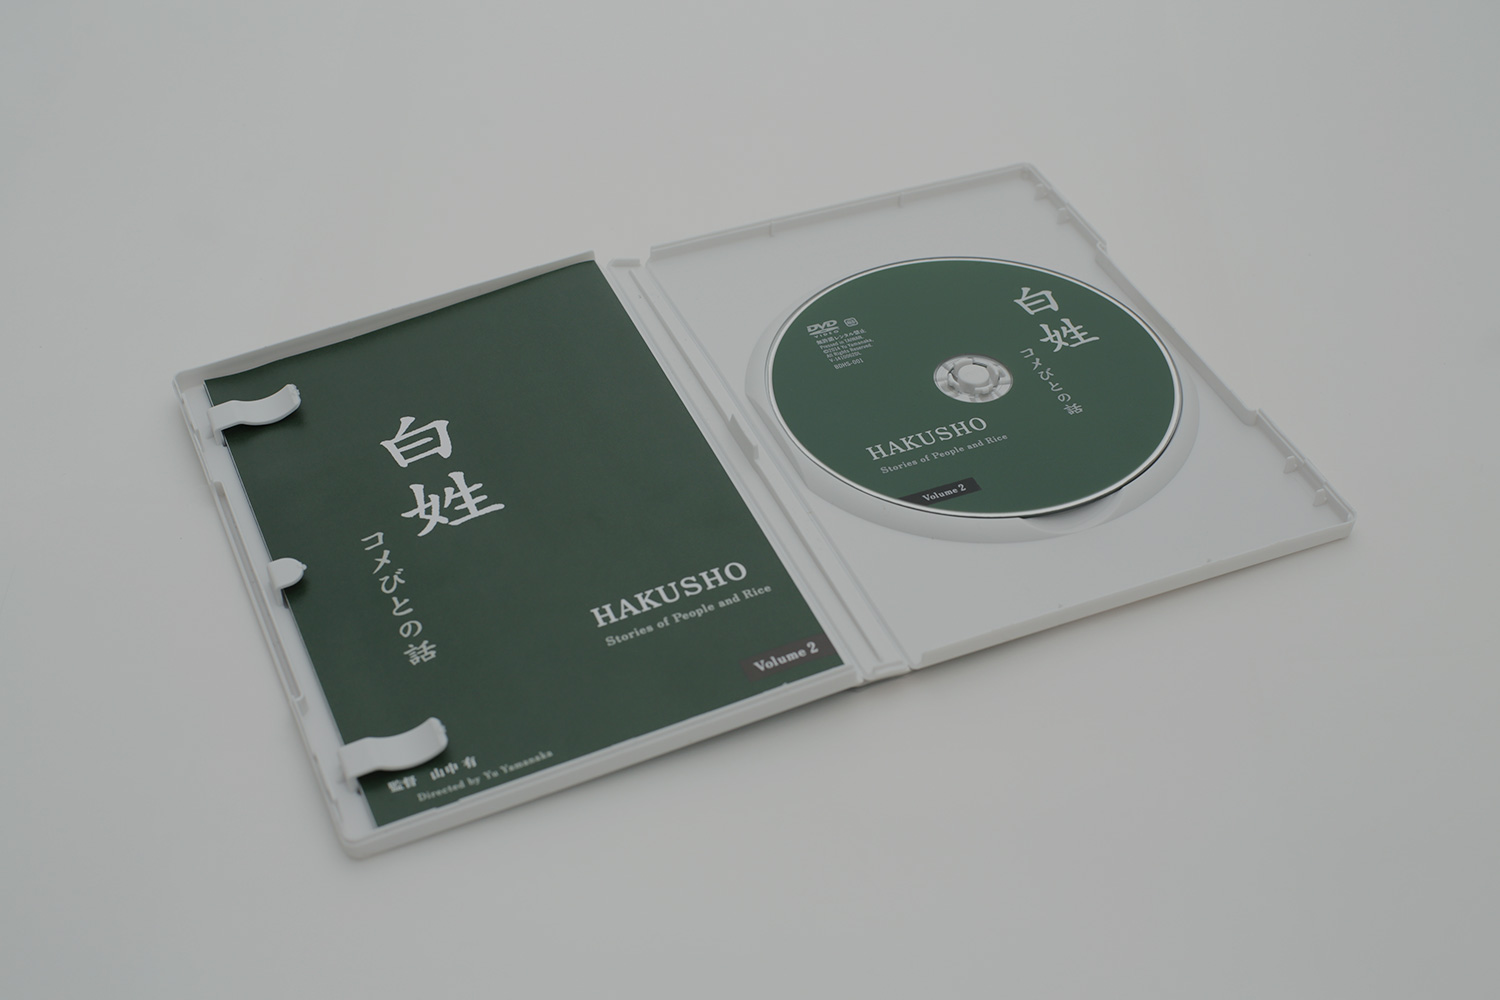 「白姓〈コメびとの話〉」DVDリリース<br />Hakusho: “Stories People and Rice” the DVD is released.